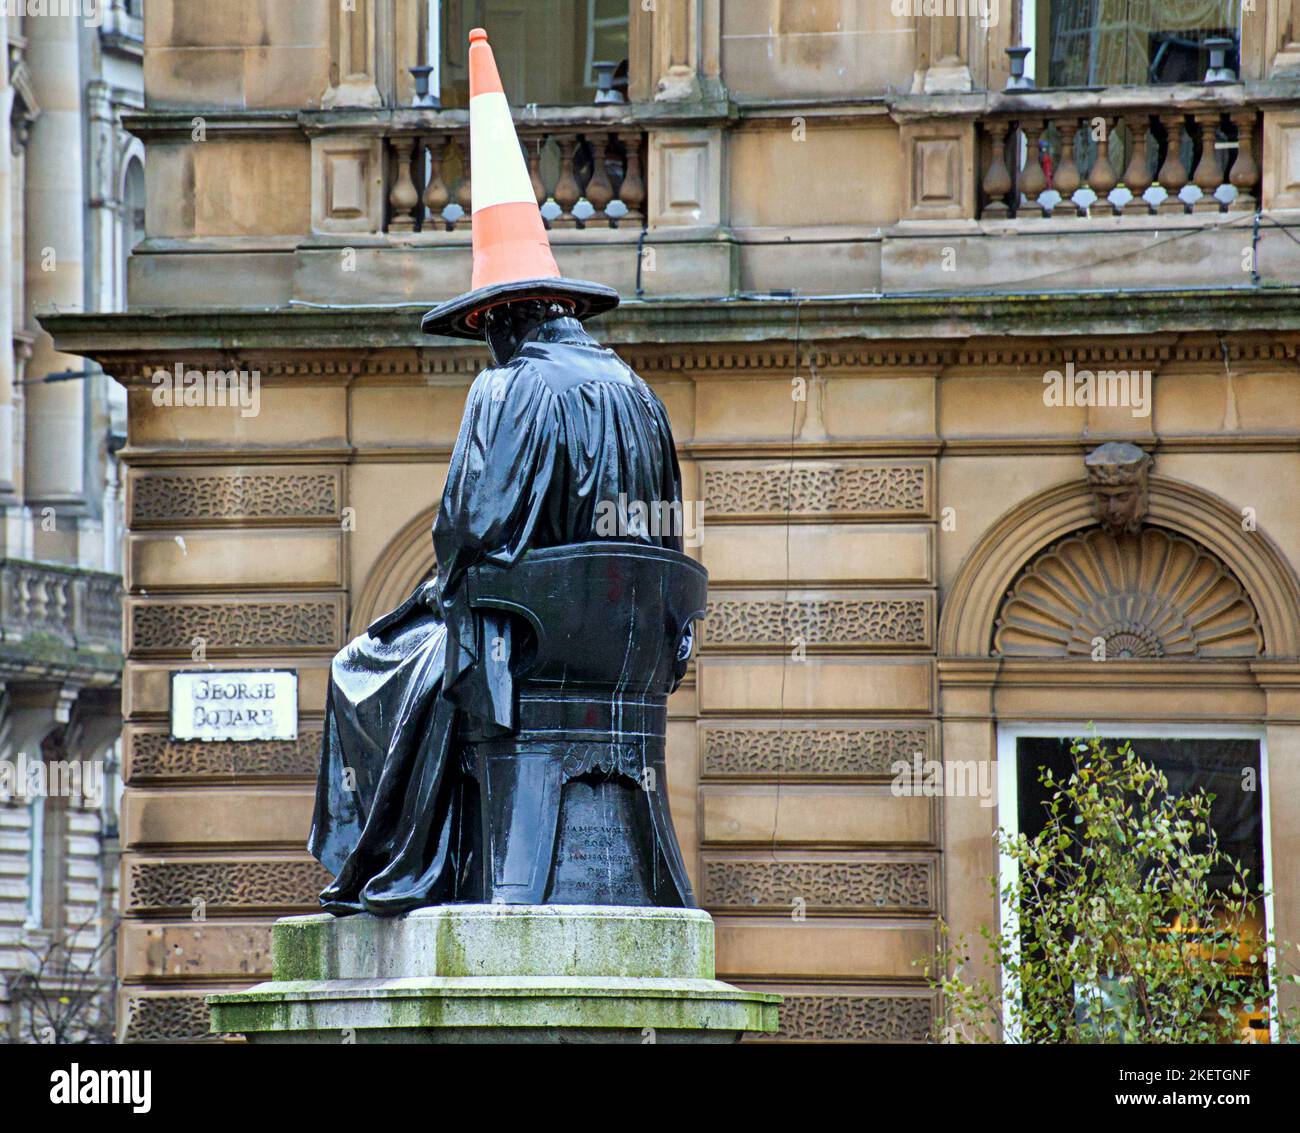 La statue de James Watt sur la place George a donné le traitement emblématique de la tête conique locale et l'apparence d'un dunce Banque D'Images